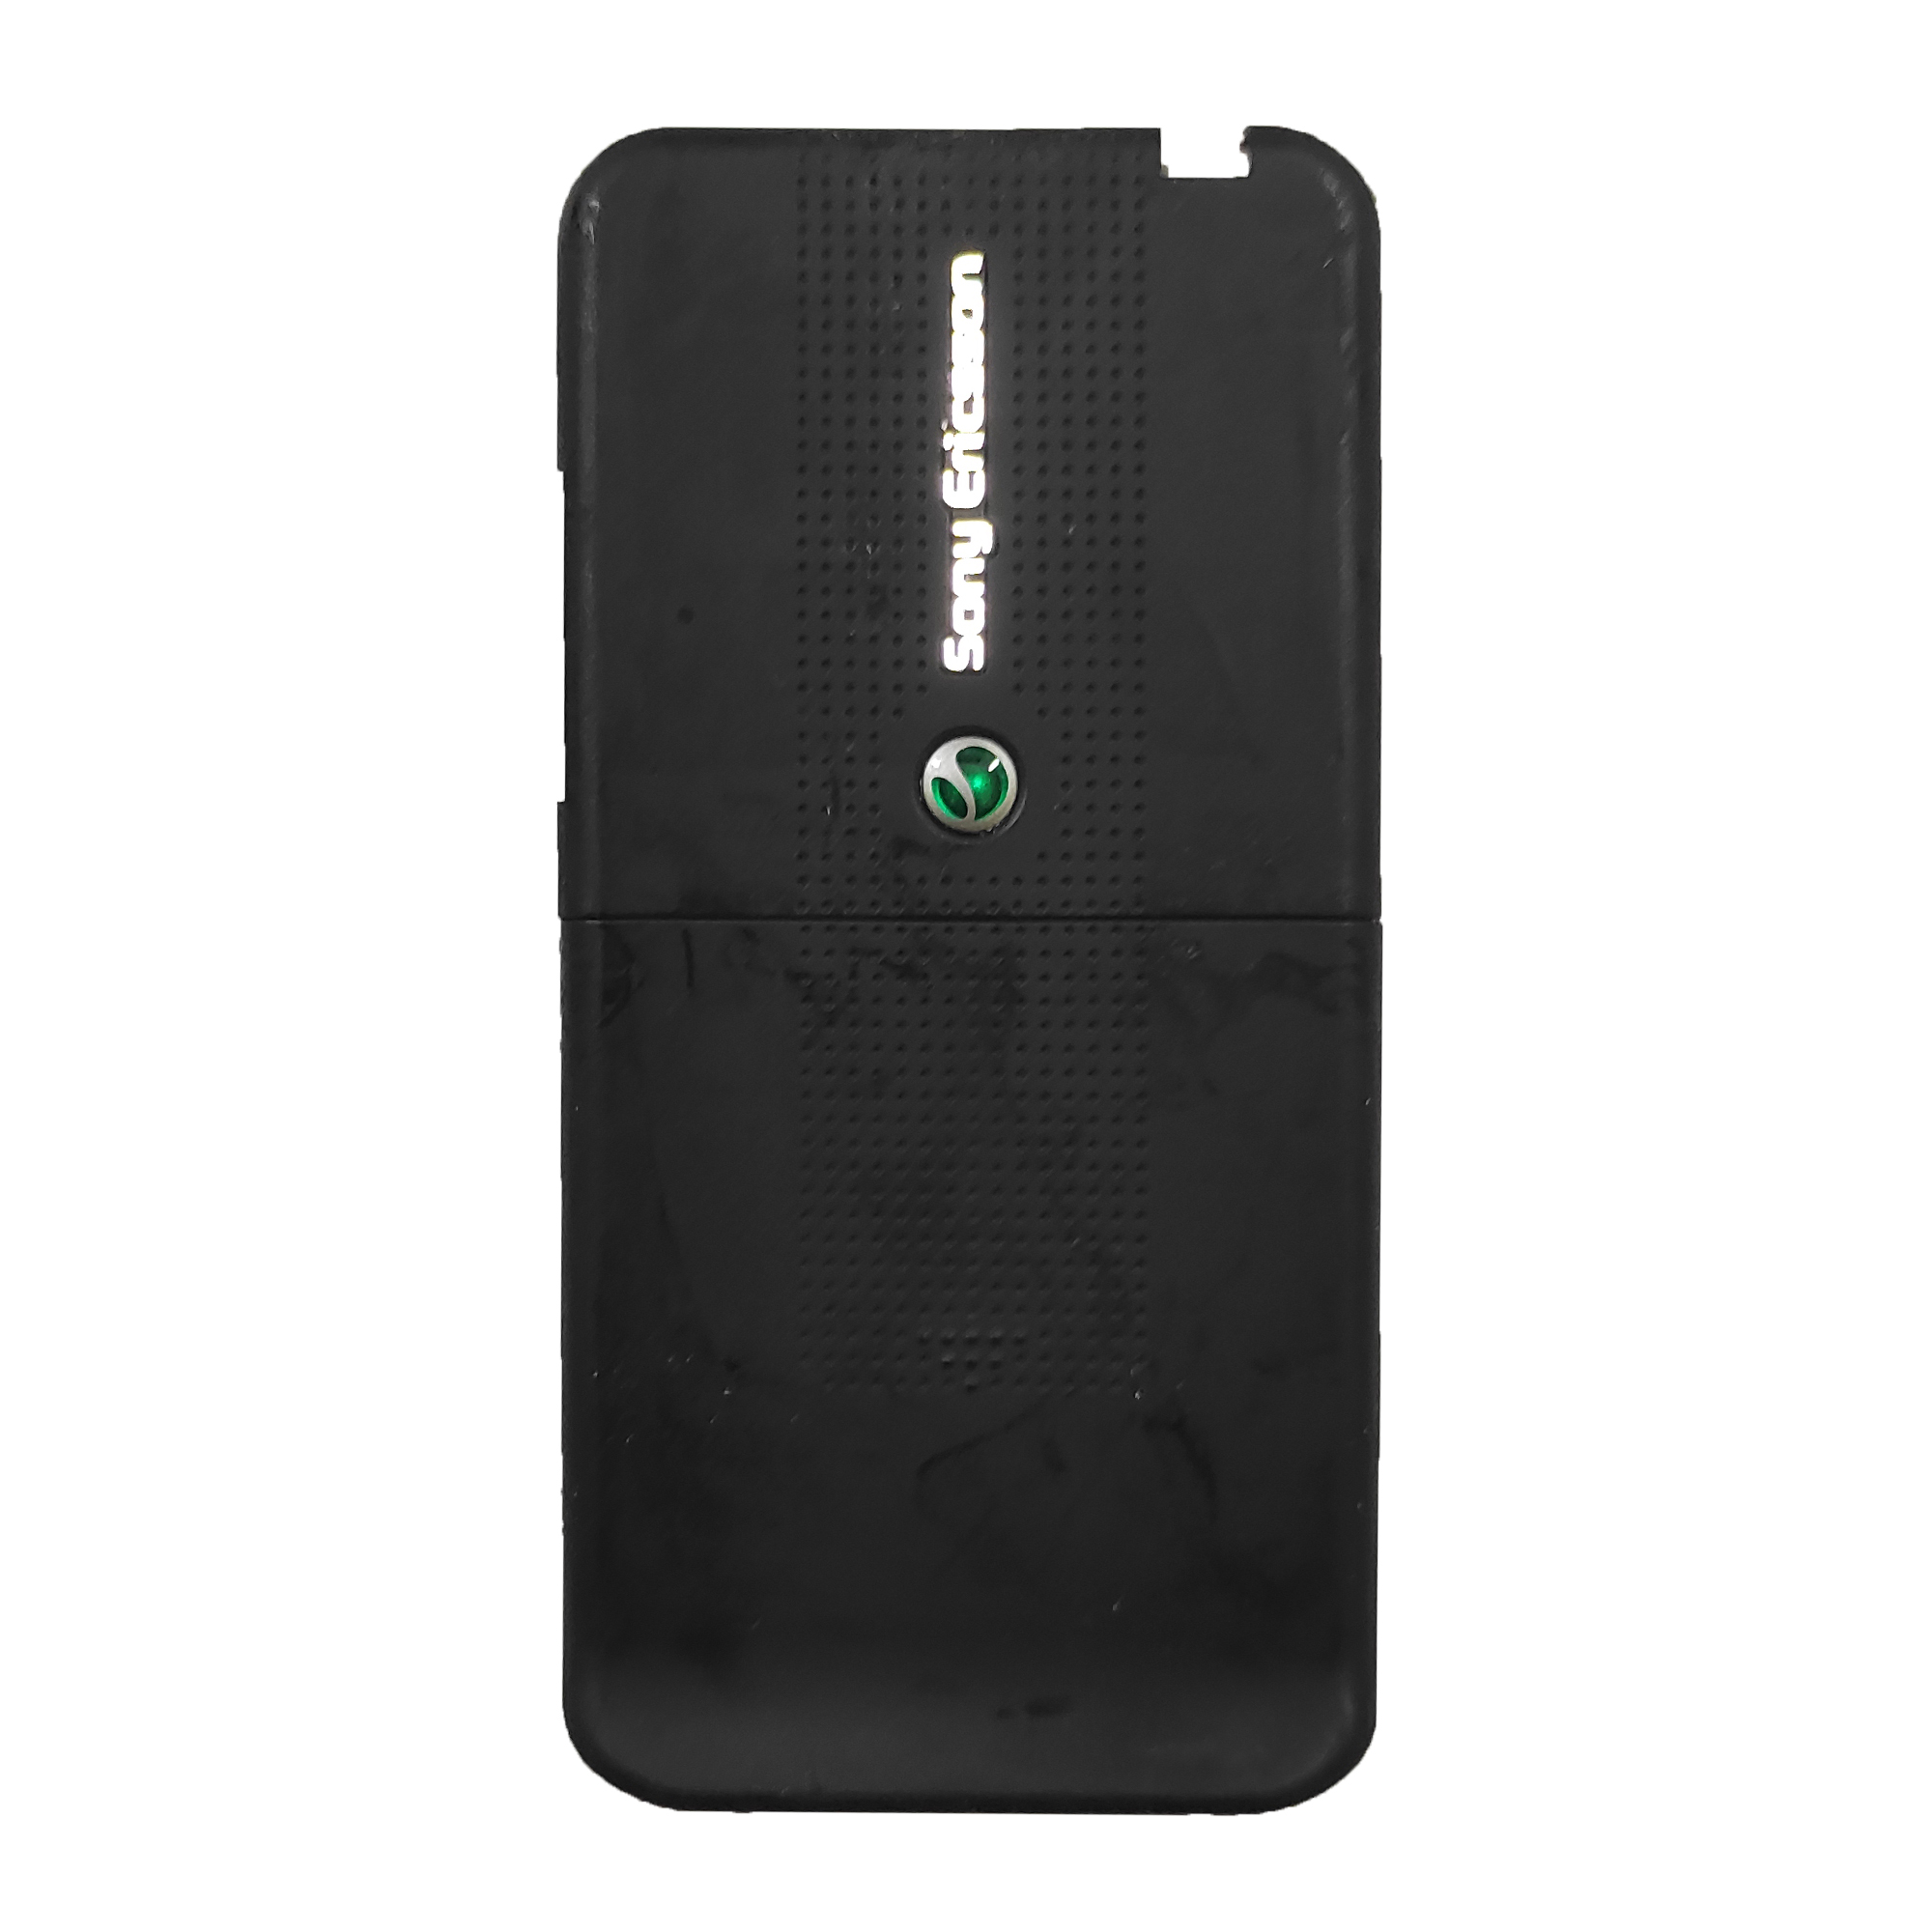 شاسی گوشی موبایل مدل U101 مناسب برای گوشی موبایل سونی اریکسون s500